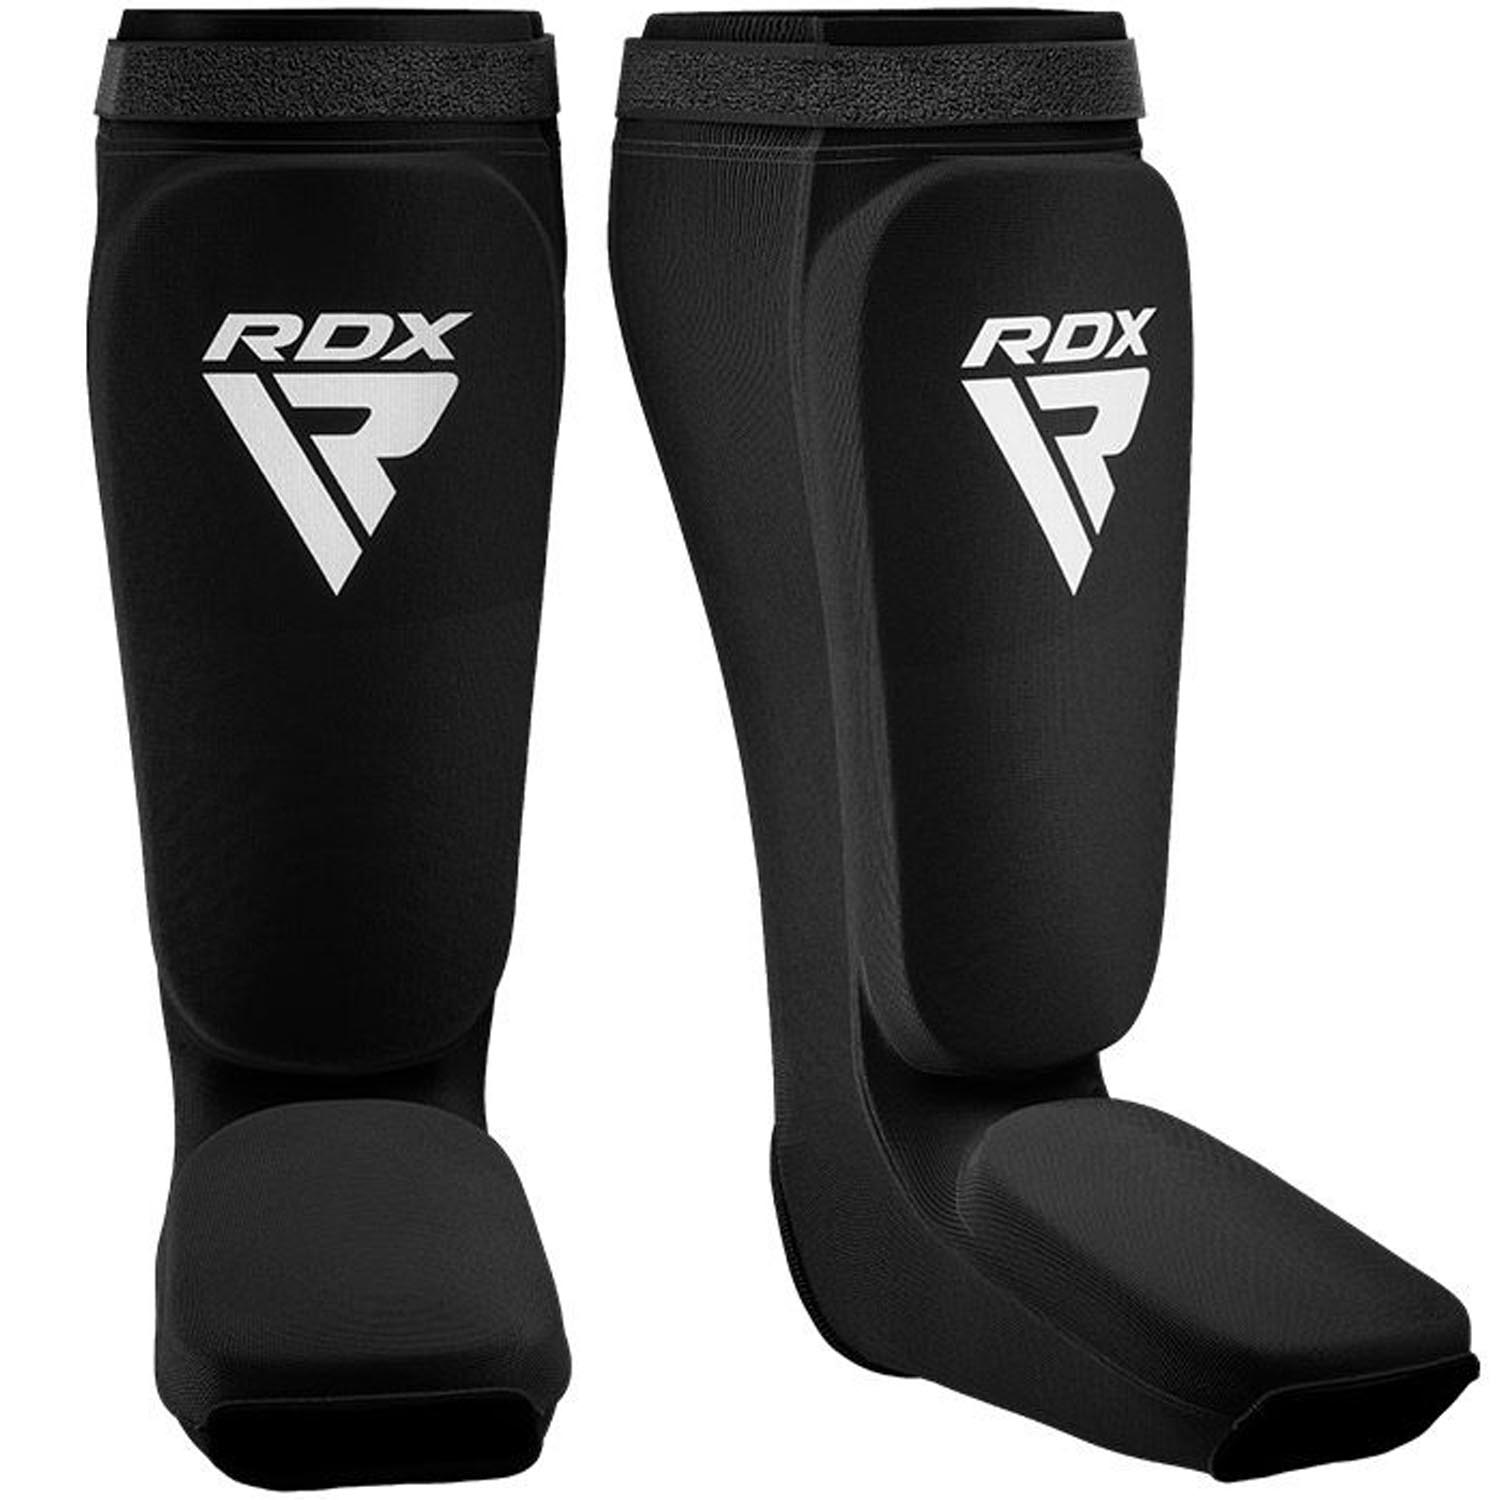 RDX Schienbeinschoner, schwarz-weiß, XL